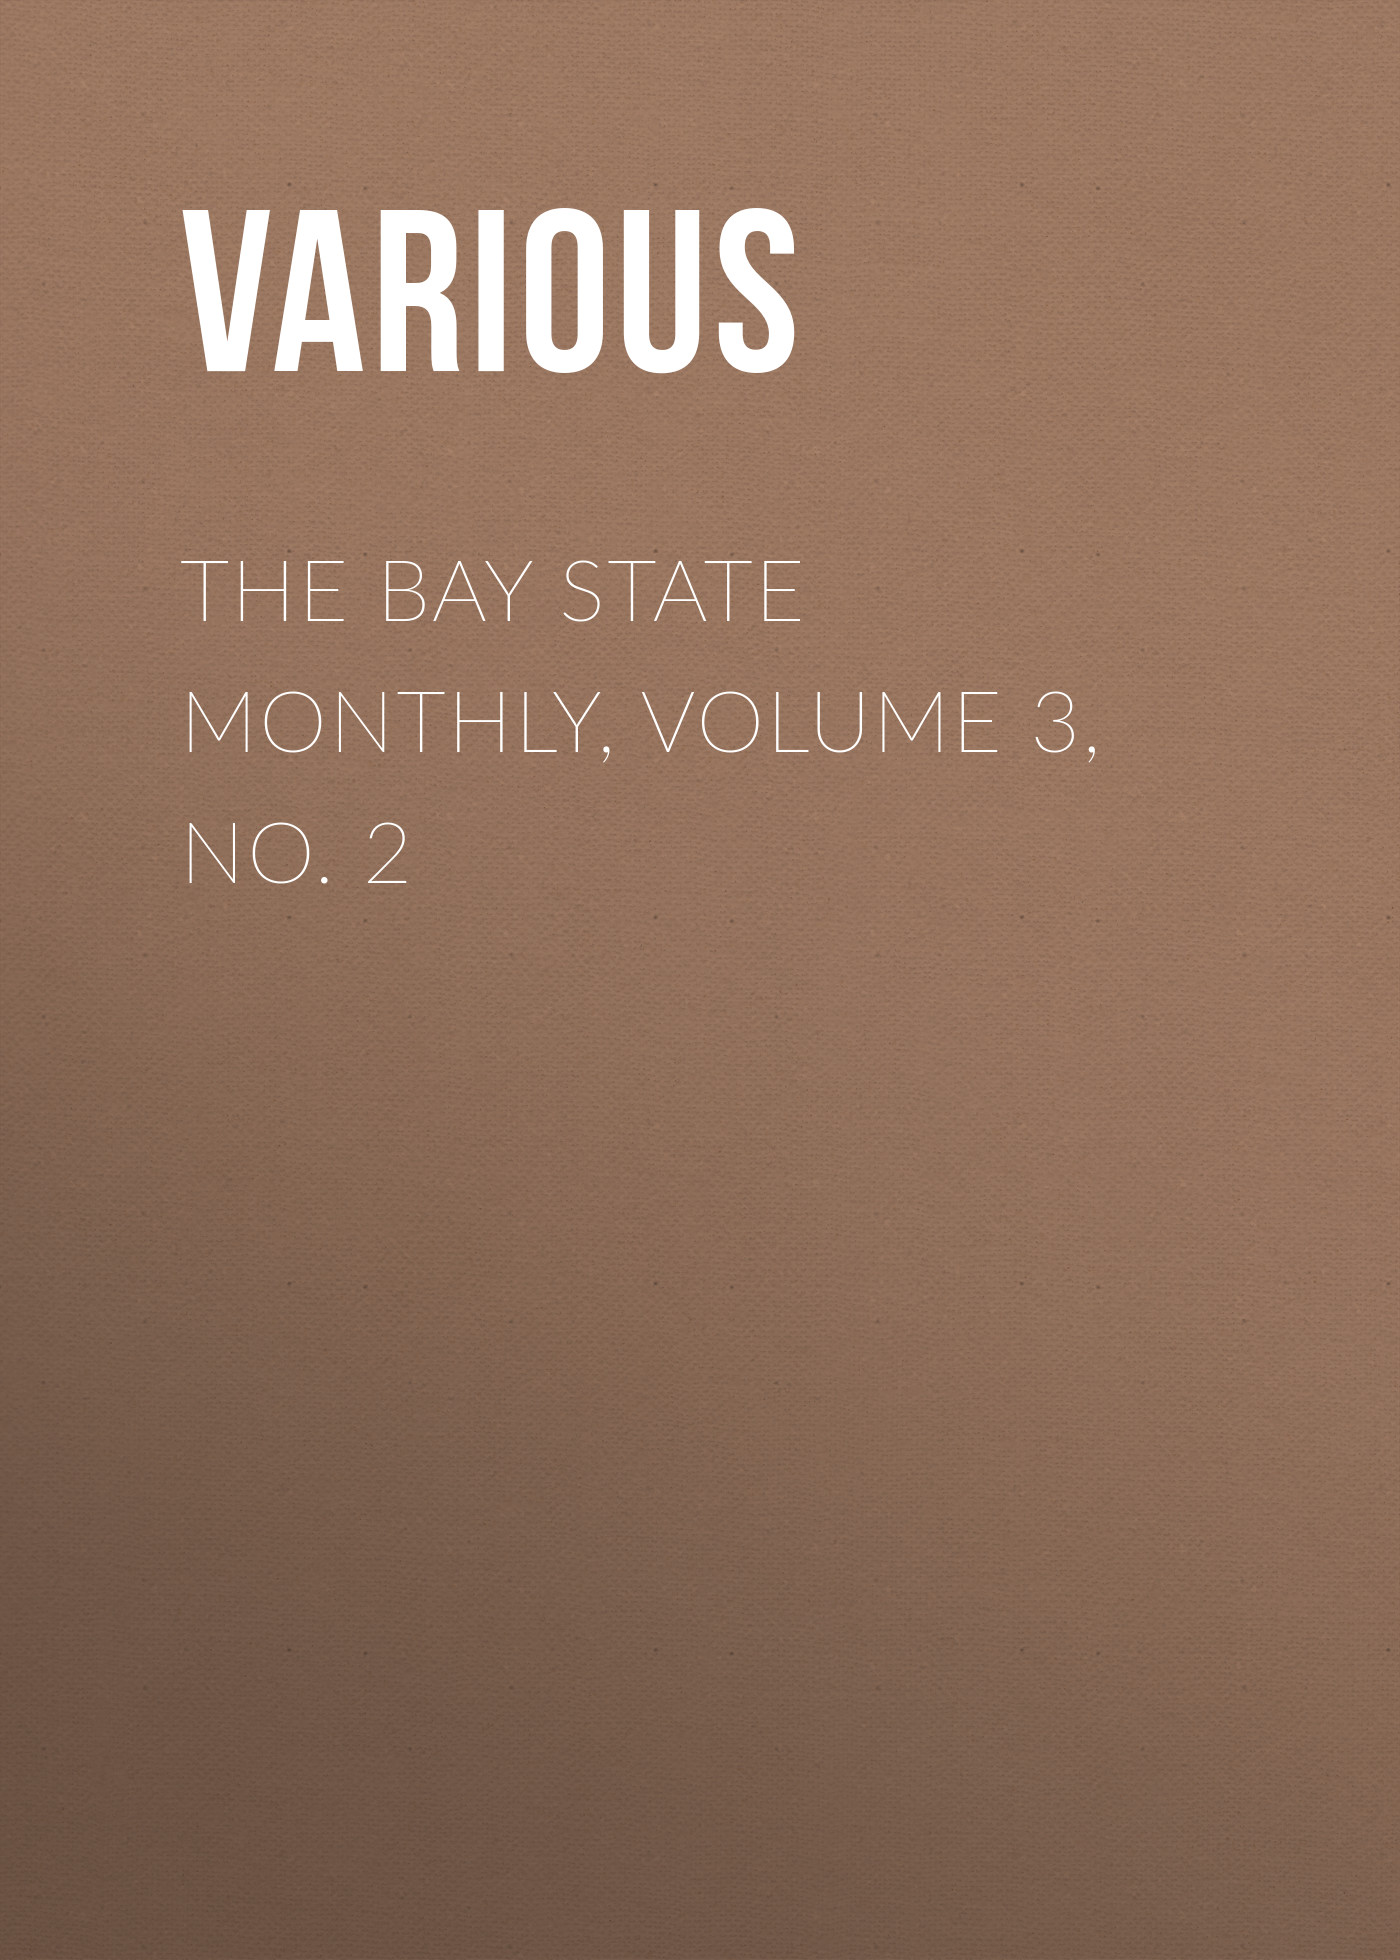 Книга The Bay State Monthly, Volume 3, No. 2 из серии , созданная  Various, может относится к жанру Зарубежная старинная литература, Журналы, Зарубежная образовательная литература. Стоимость электронной книги The Bay State Monthly, Volume 3, No. 2 с идентификатором 35502275 составляет 0 руб.